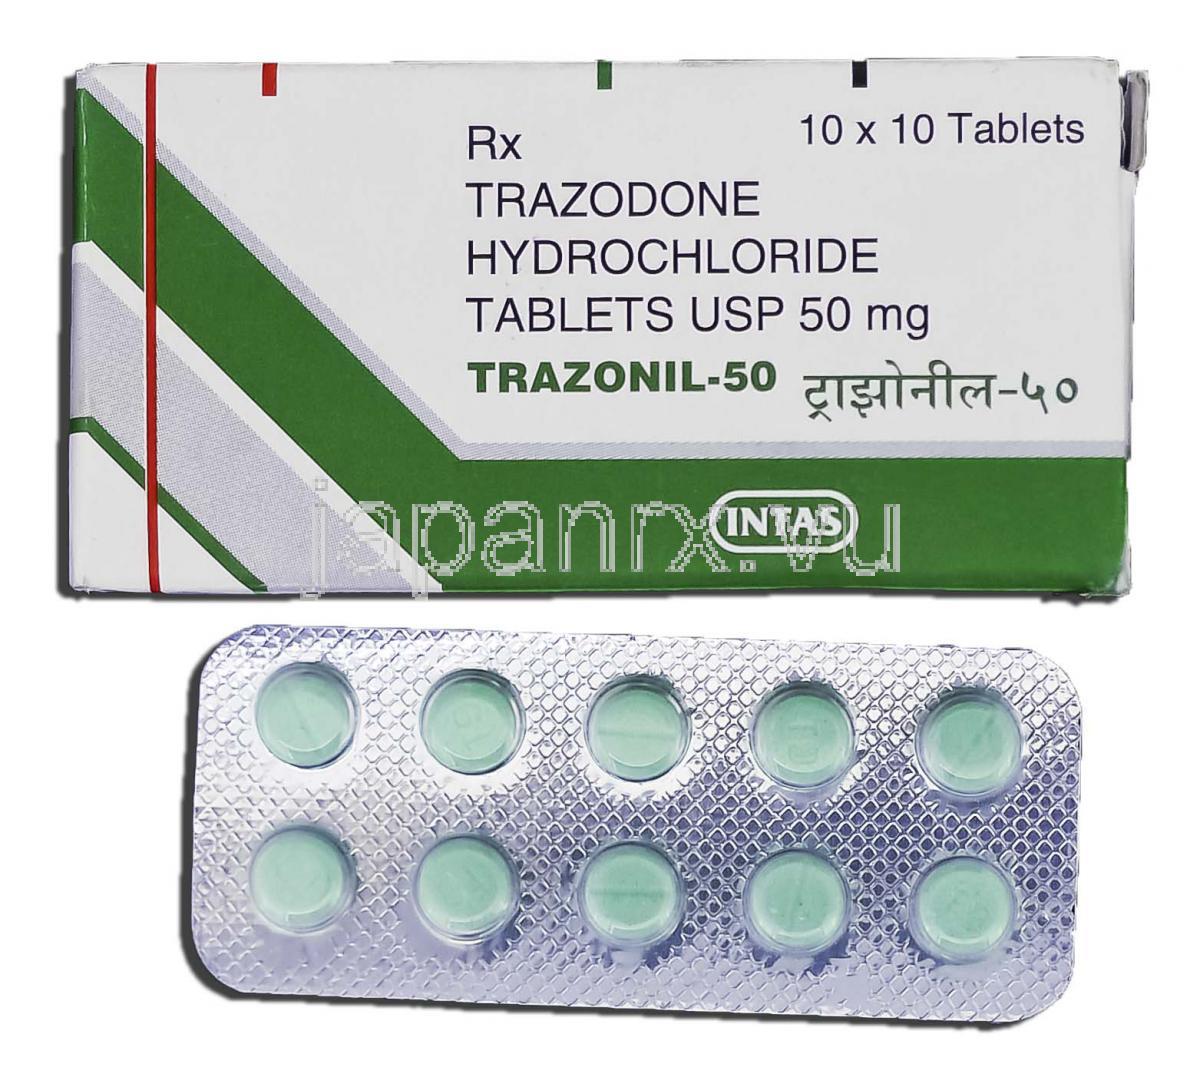 Azax 500 mg price